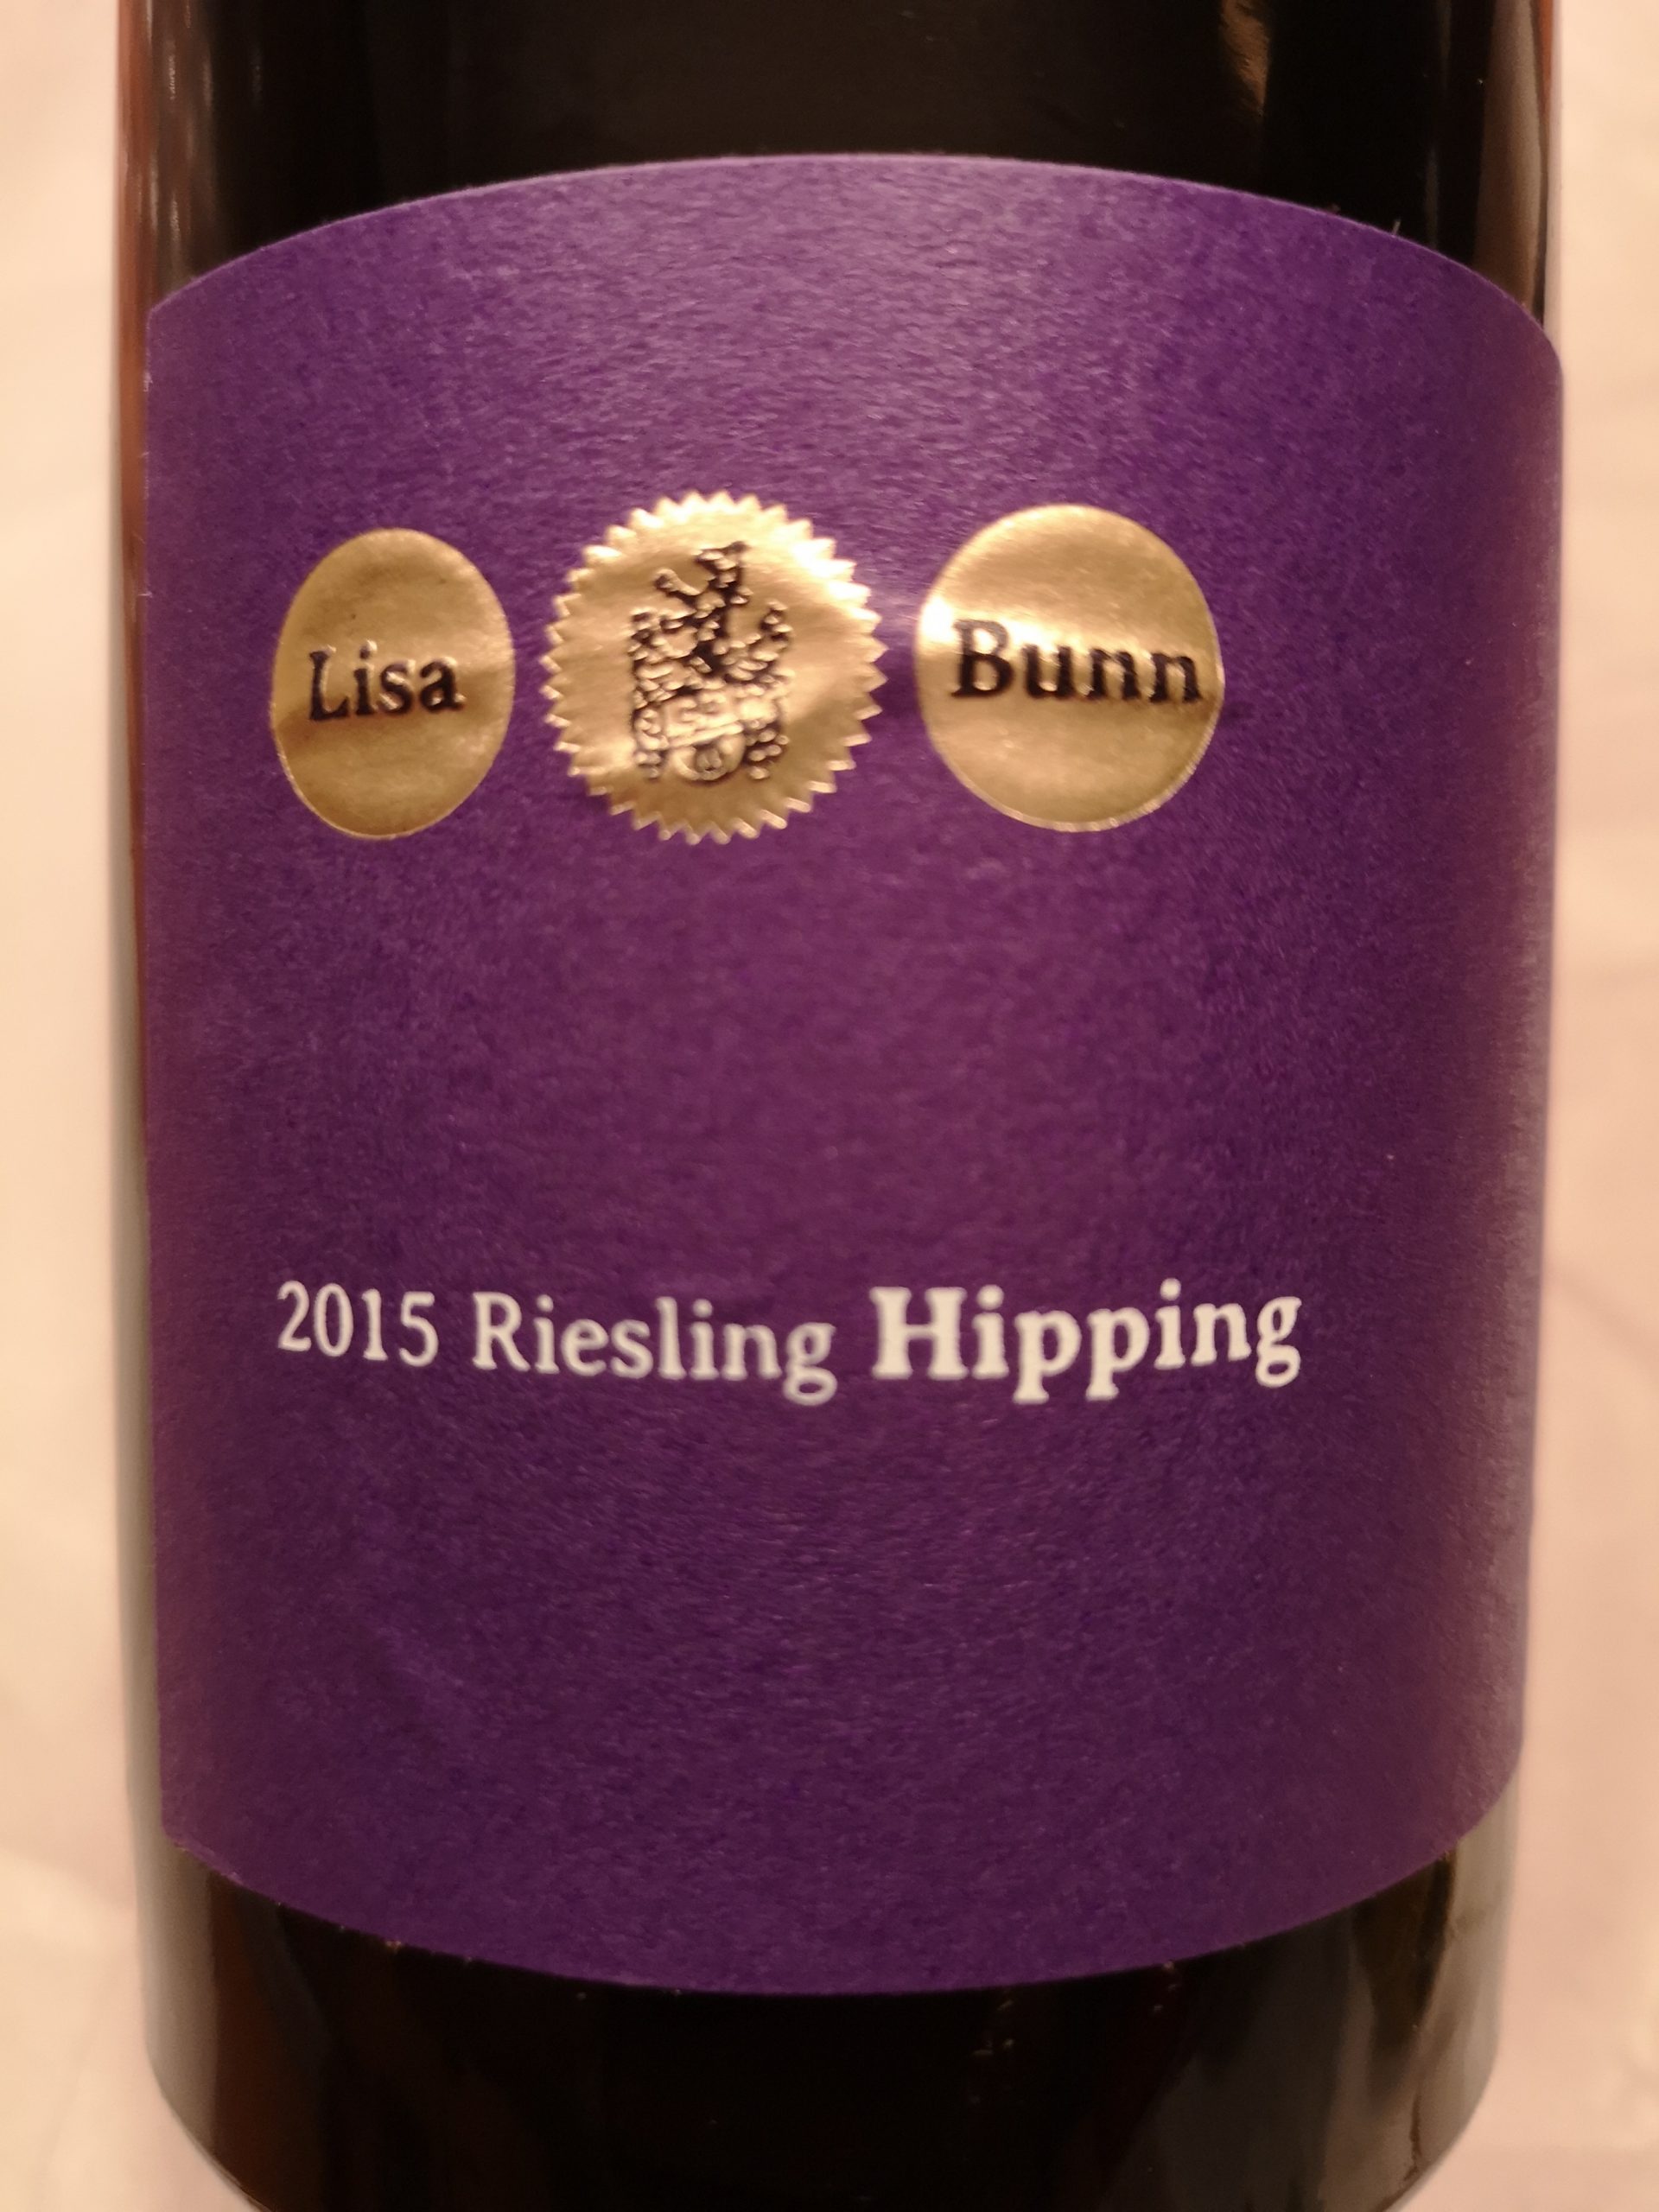 2015 Riesling Hipping | Lisa Bunn